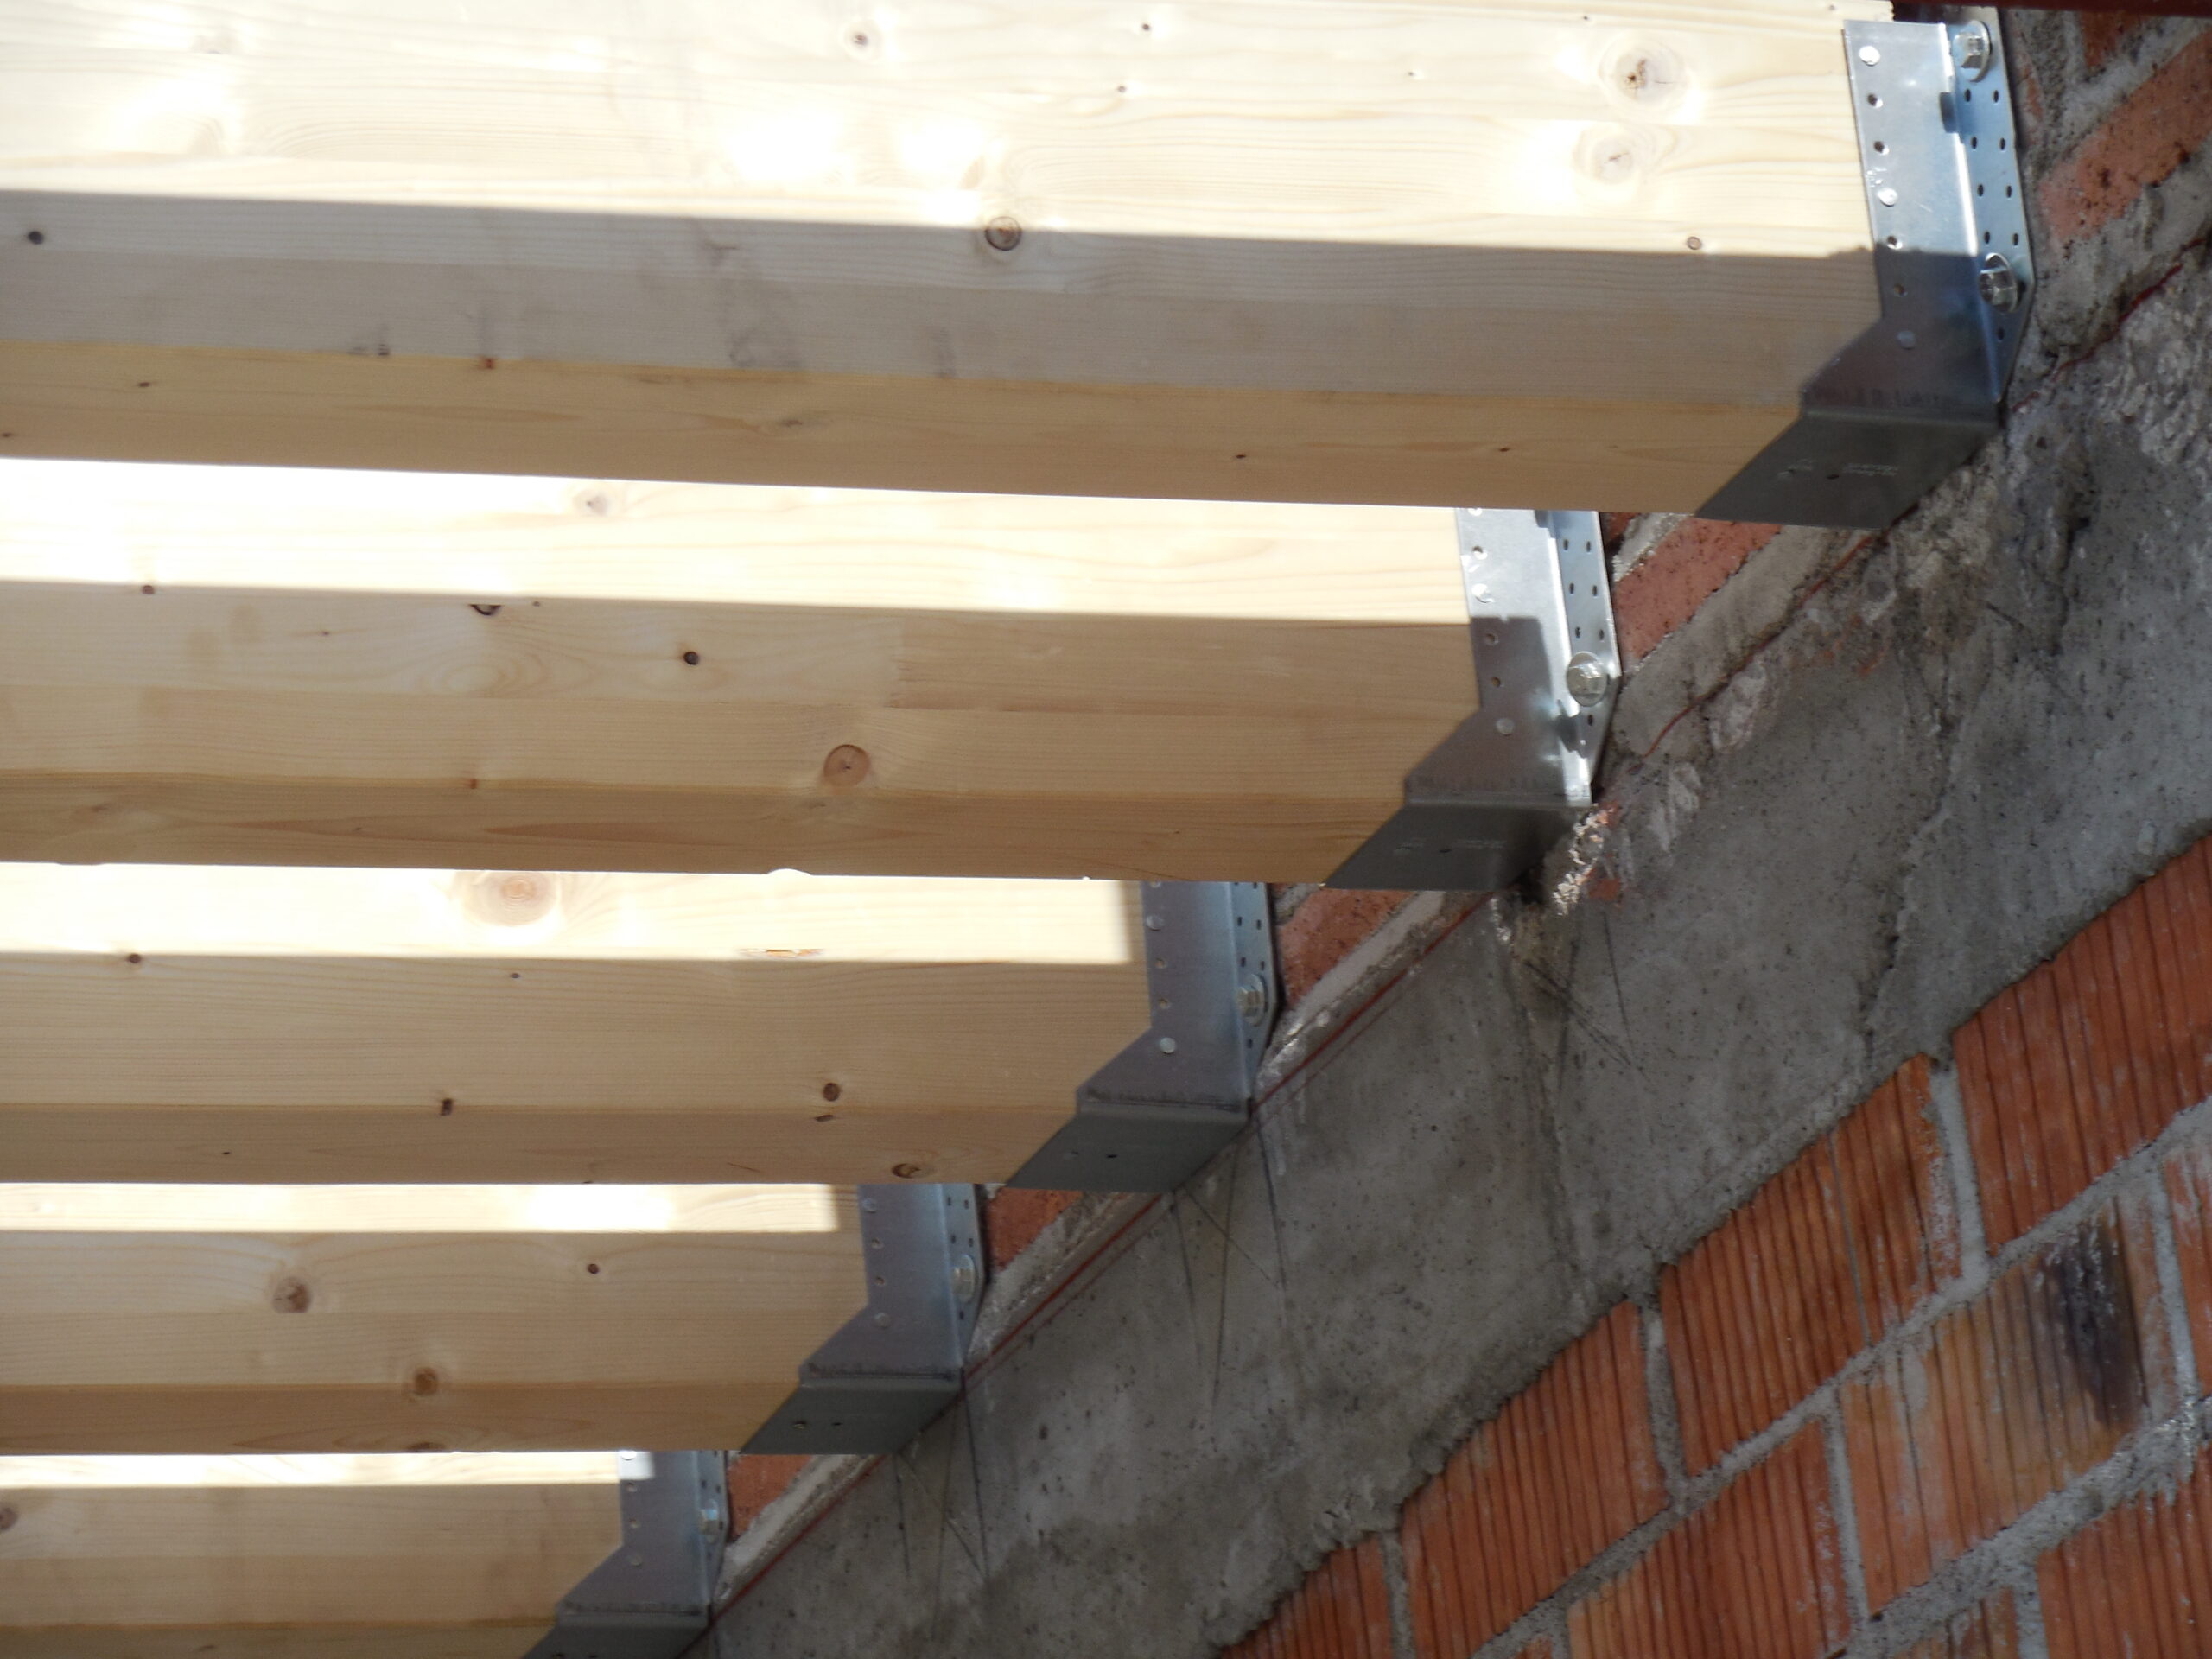 La colocación de vigas de madera puede transformar cualquier espacio creando cubiertas y techos. Para hacerlo de manera correcta es necesario seguir una serie de pasos.